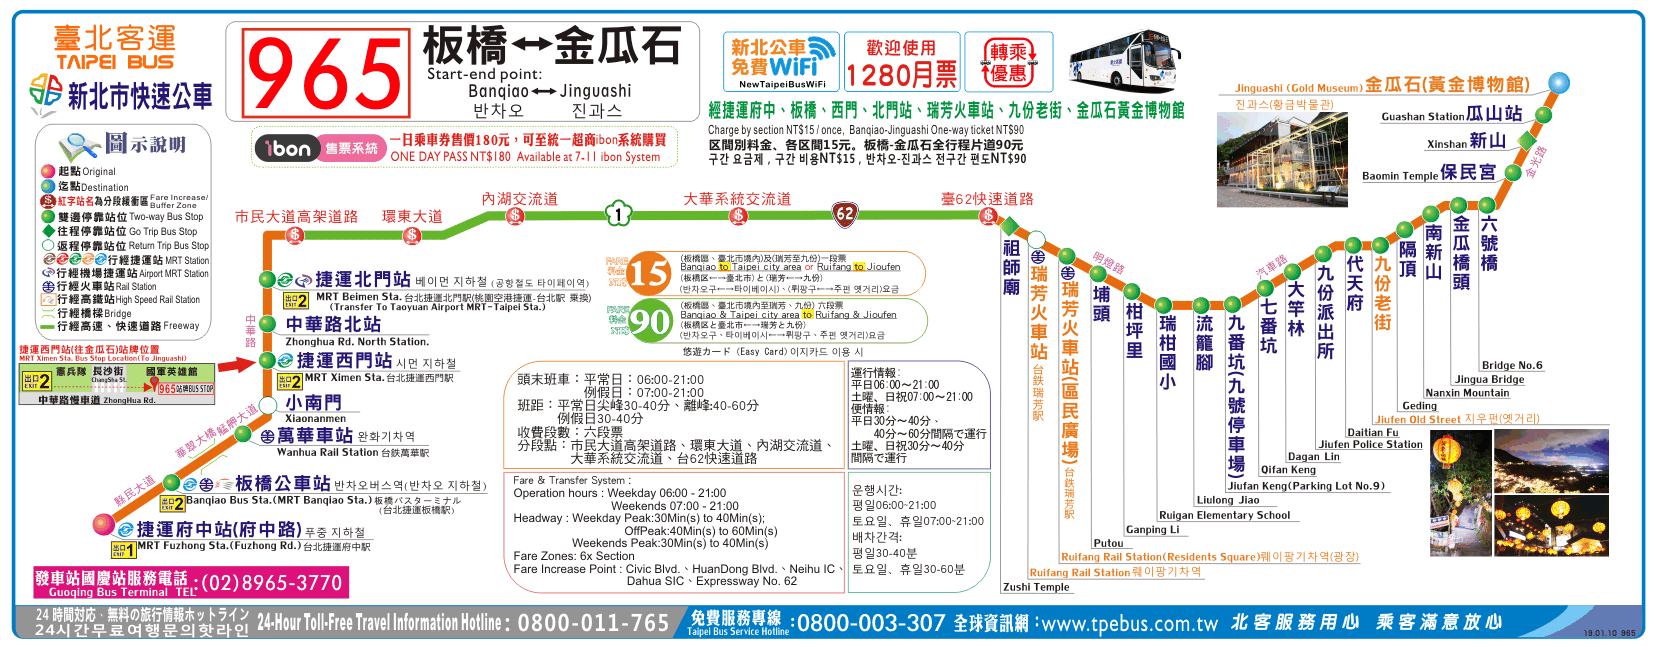 臺北客運965時刻表路線圖